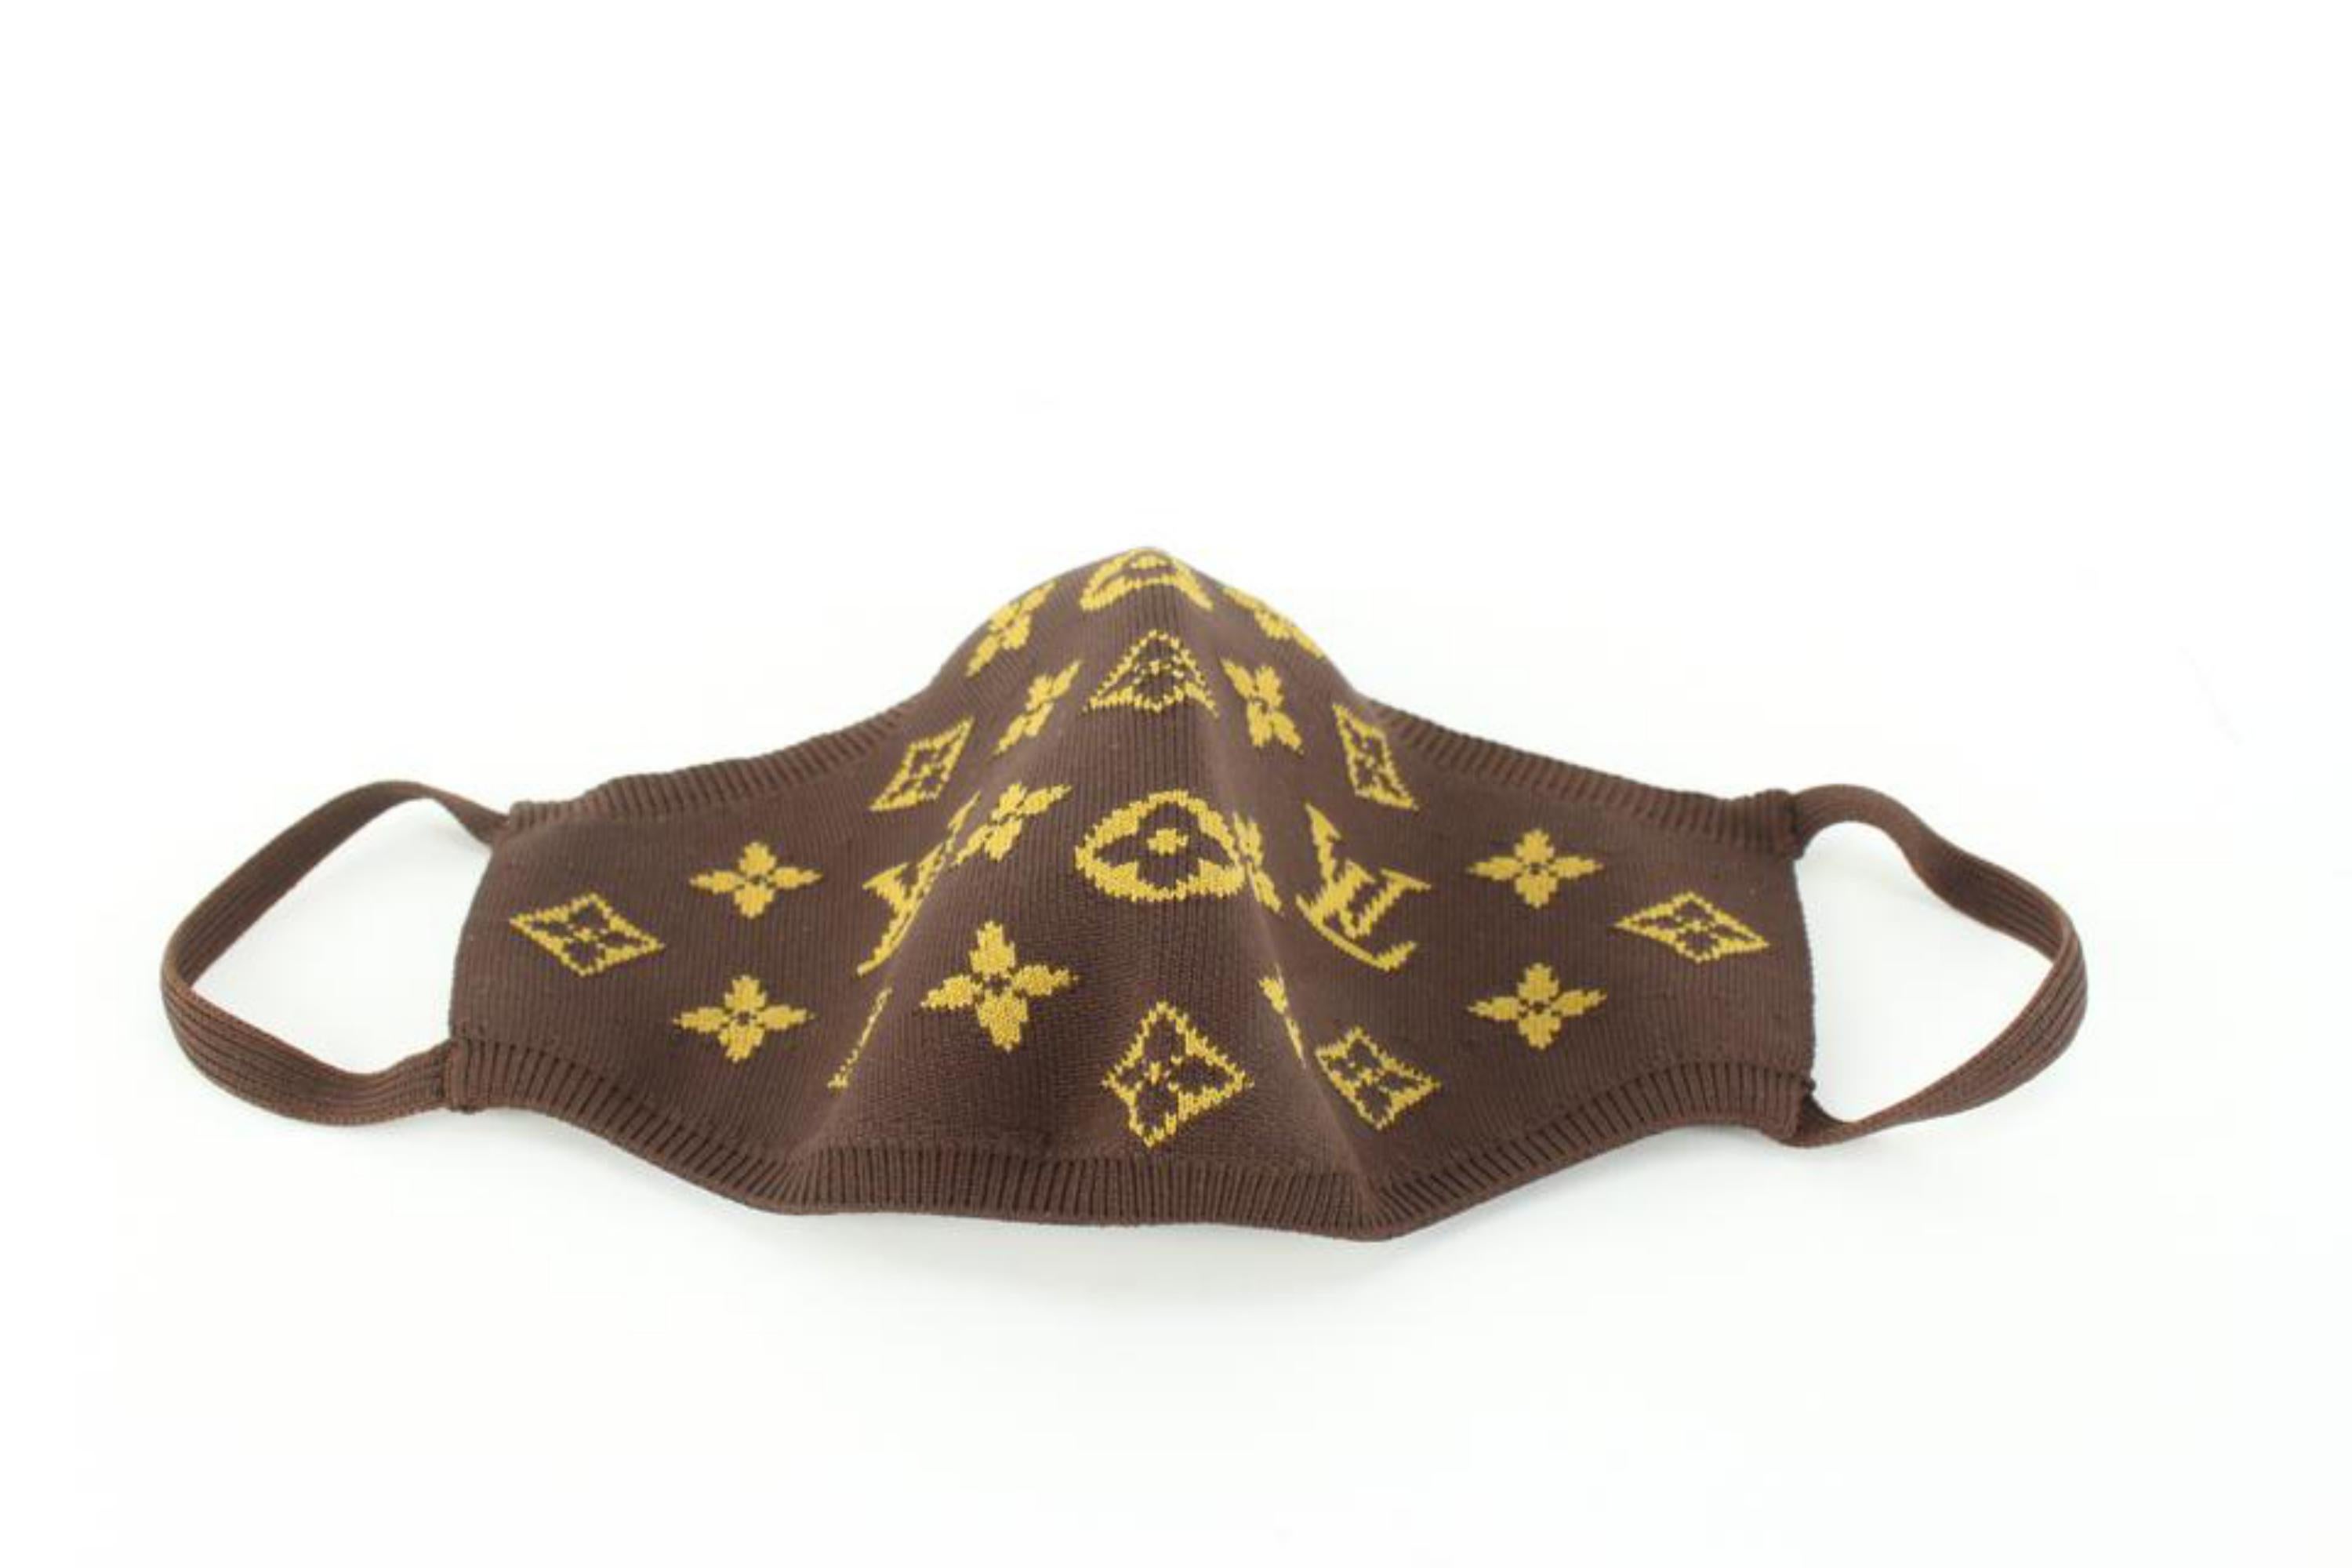 Brown Louis Vuitton Monogram Knit Face Mask 94lz526s